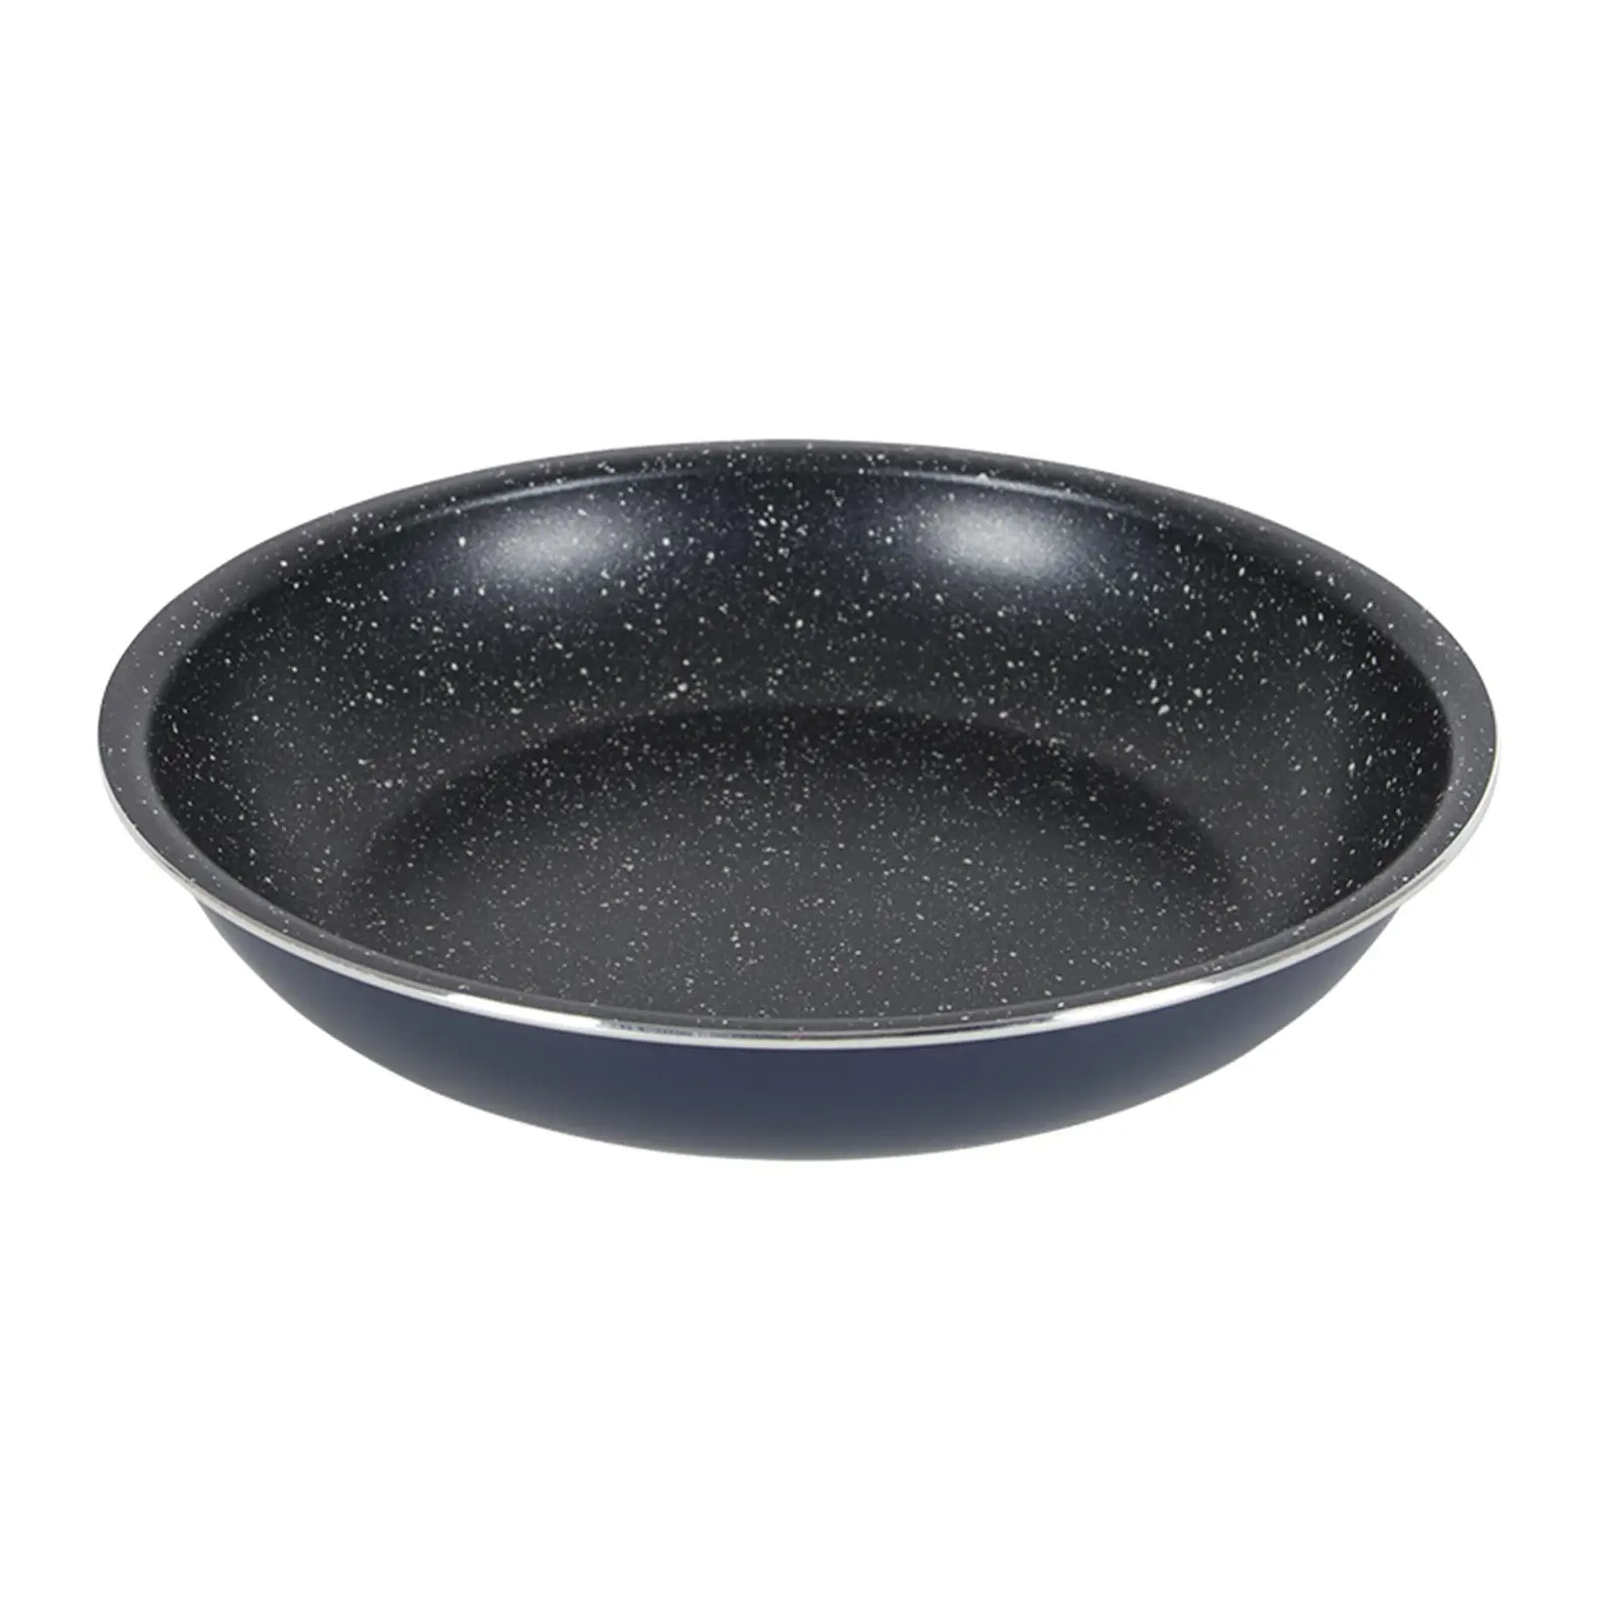 Набор посуды Gimex Cookware Set induction 8 предметів Dark Blue (6977228) изображение 6